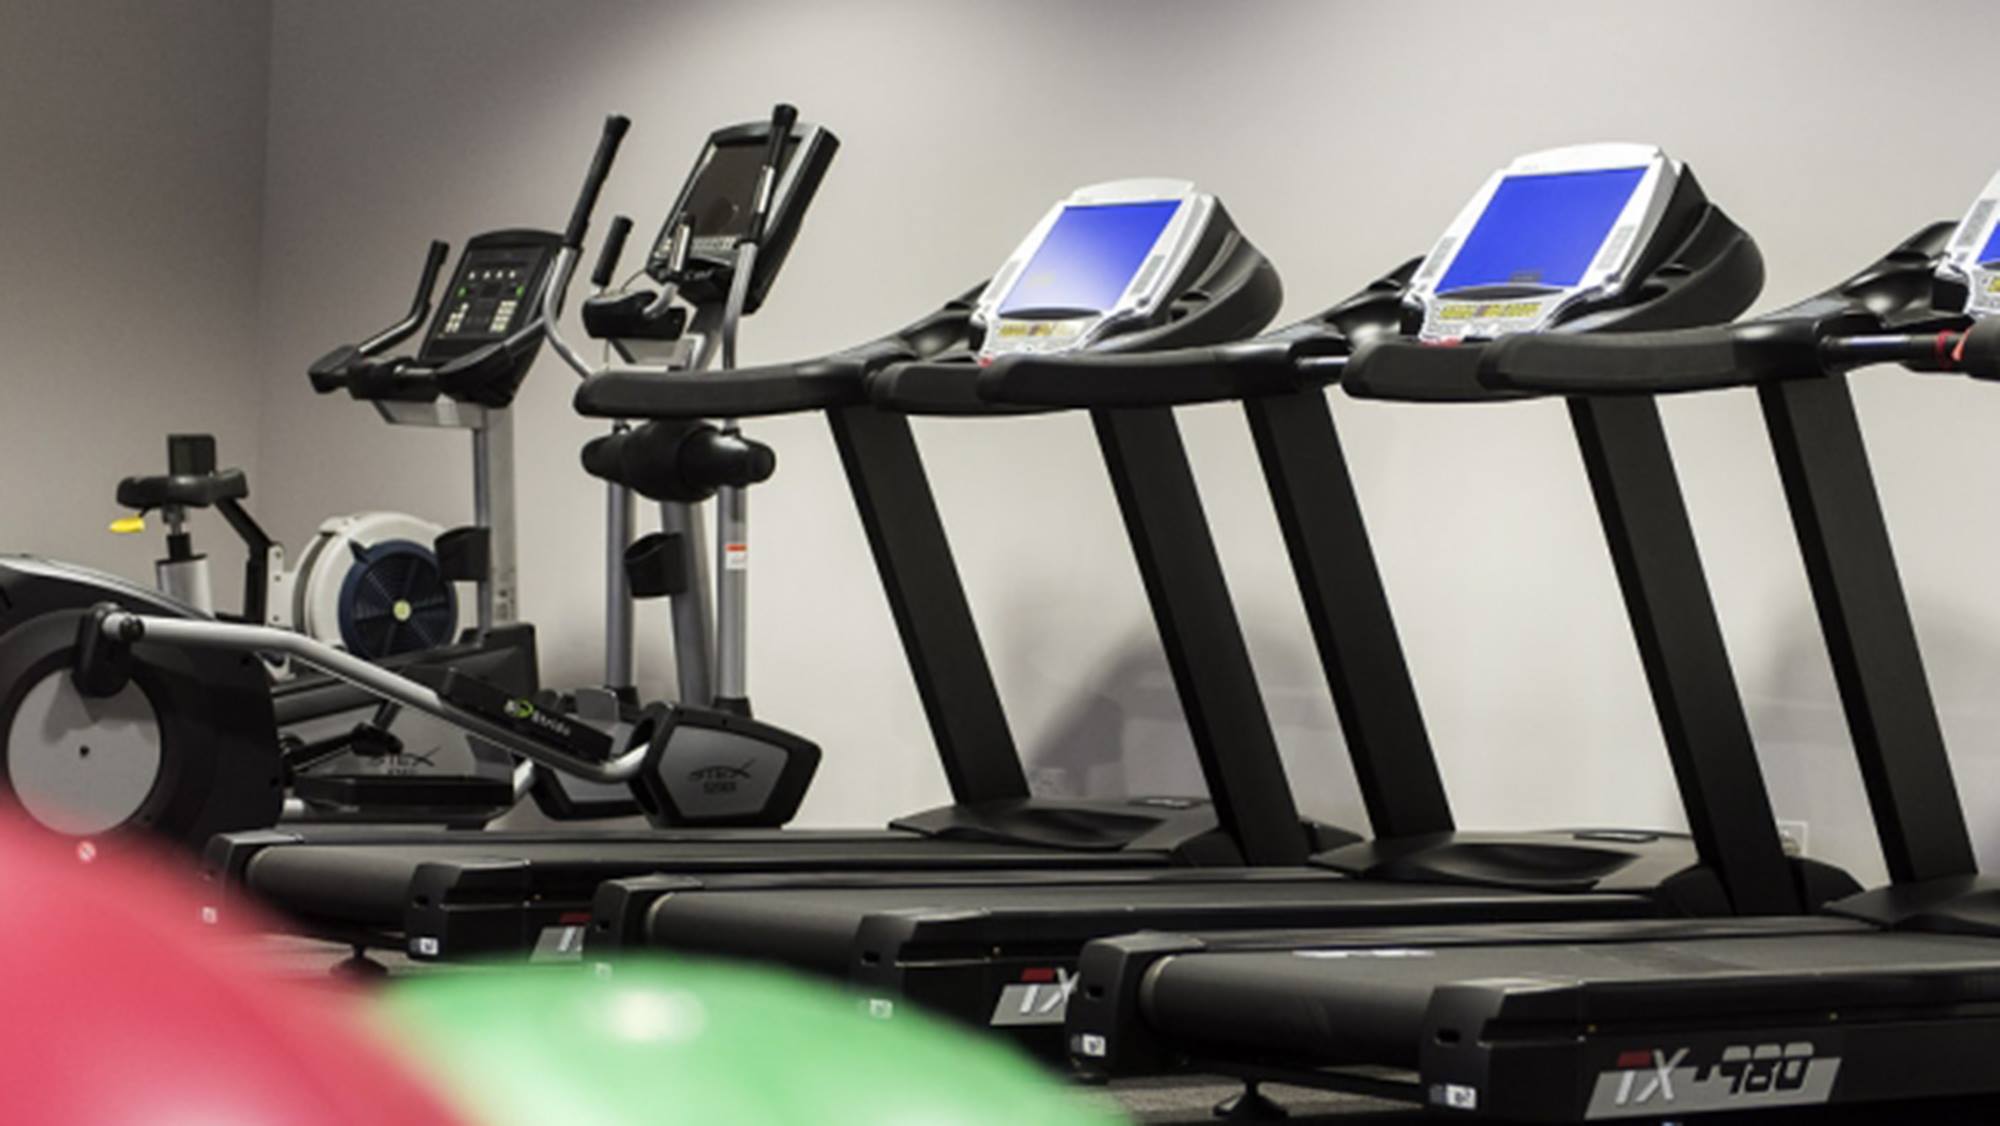  QIII gym treadmill